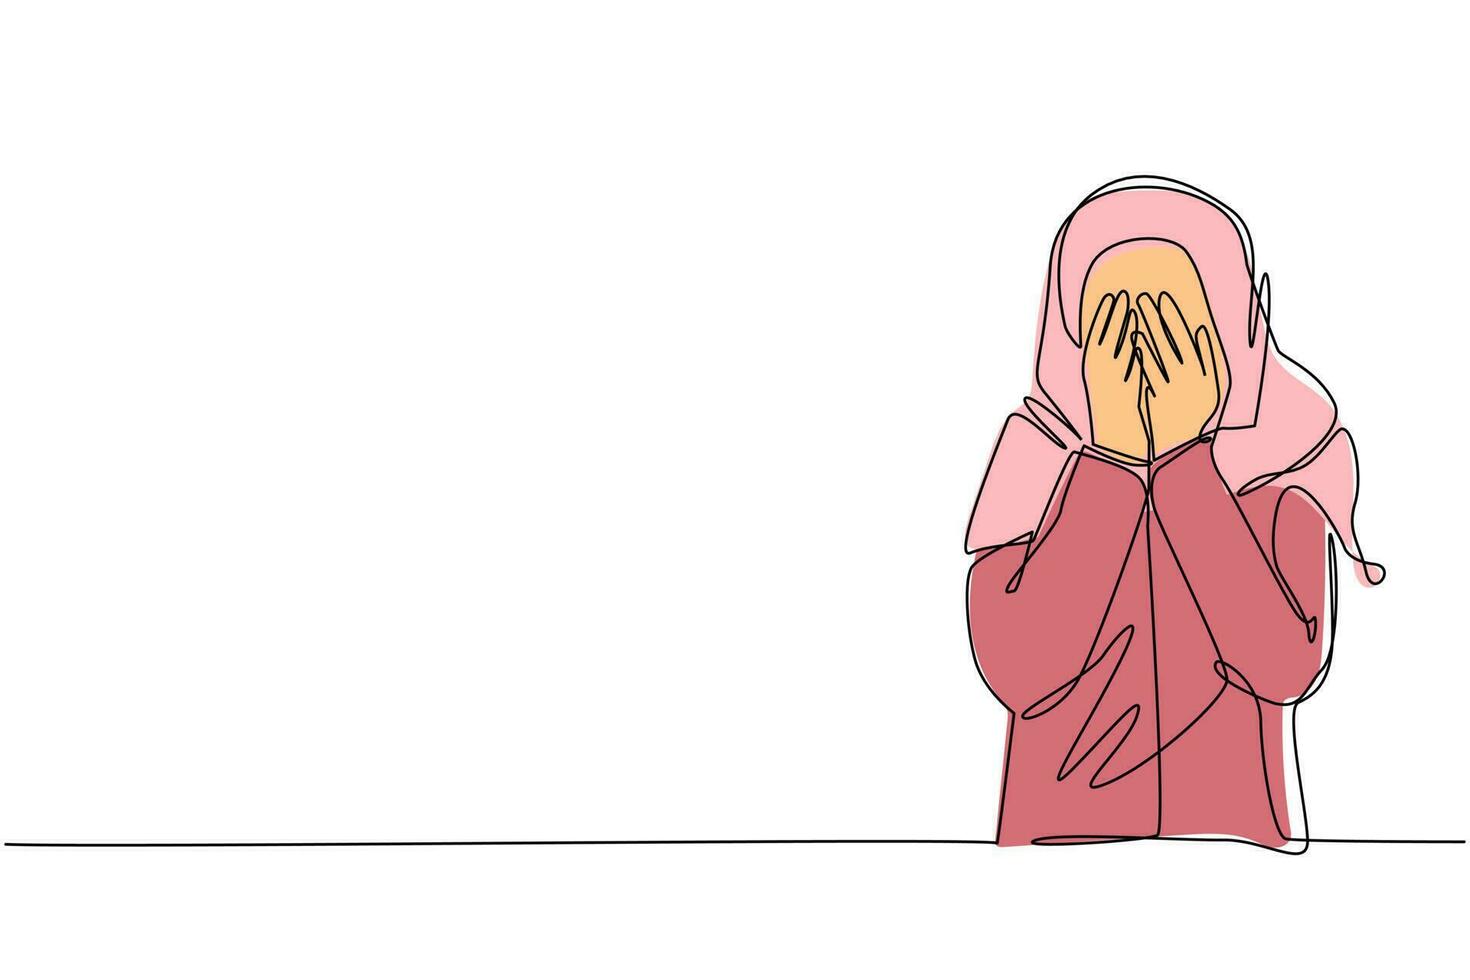 enda kontinuerlig linjeteckning ung arabisk kvinna sluter ögonen med händerna på grund av avsky och ovilja att se något, rädsla eller sorg. en rad rita grafisk design vektorillustration vektor